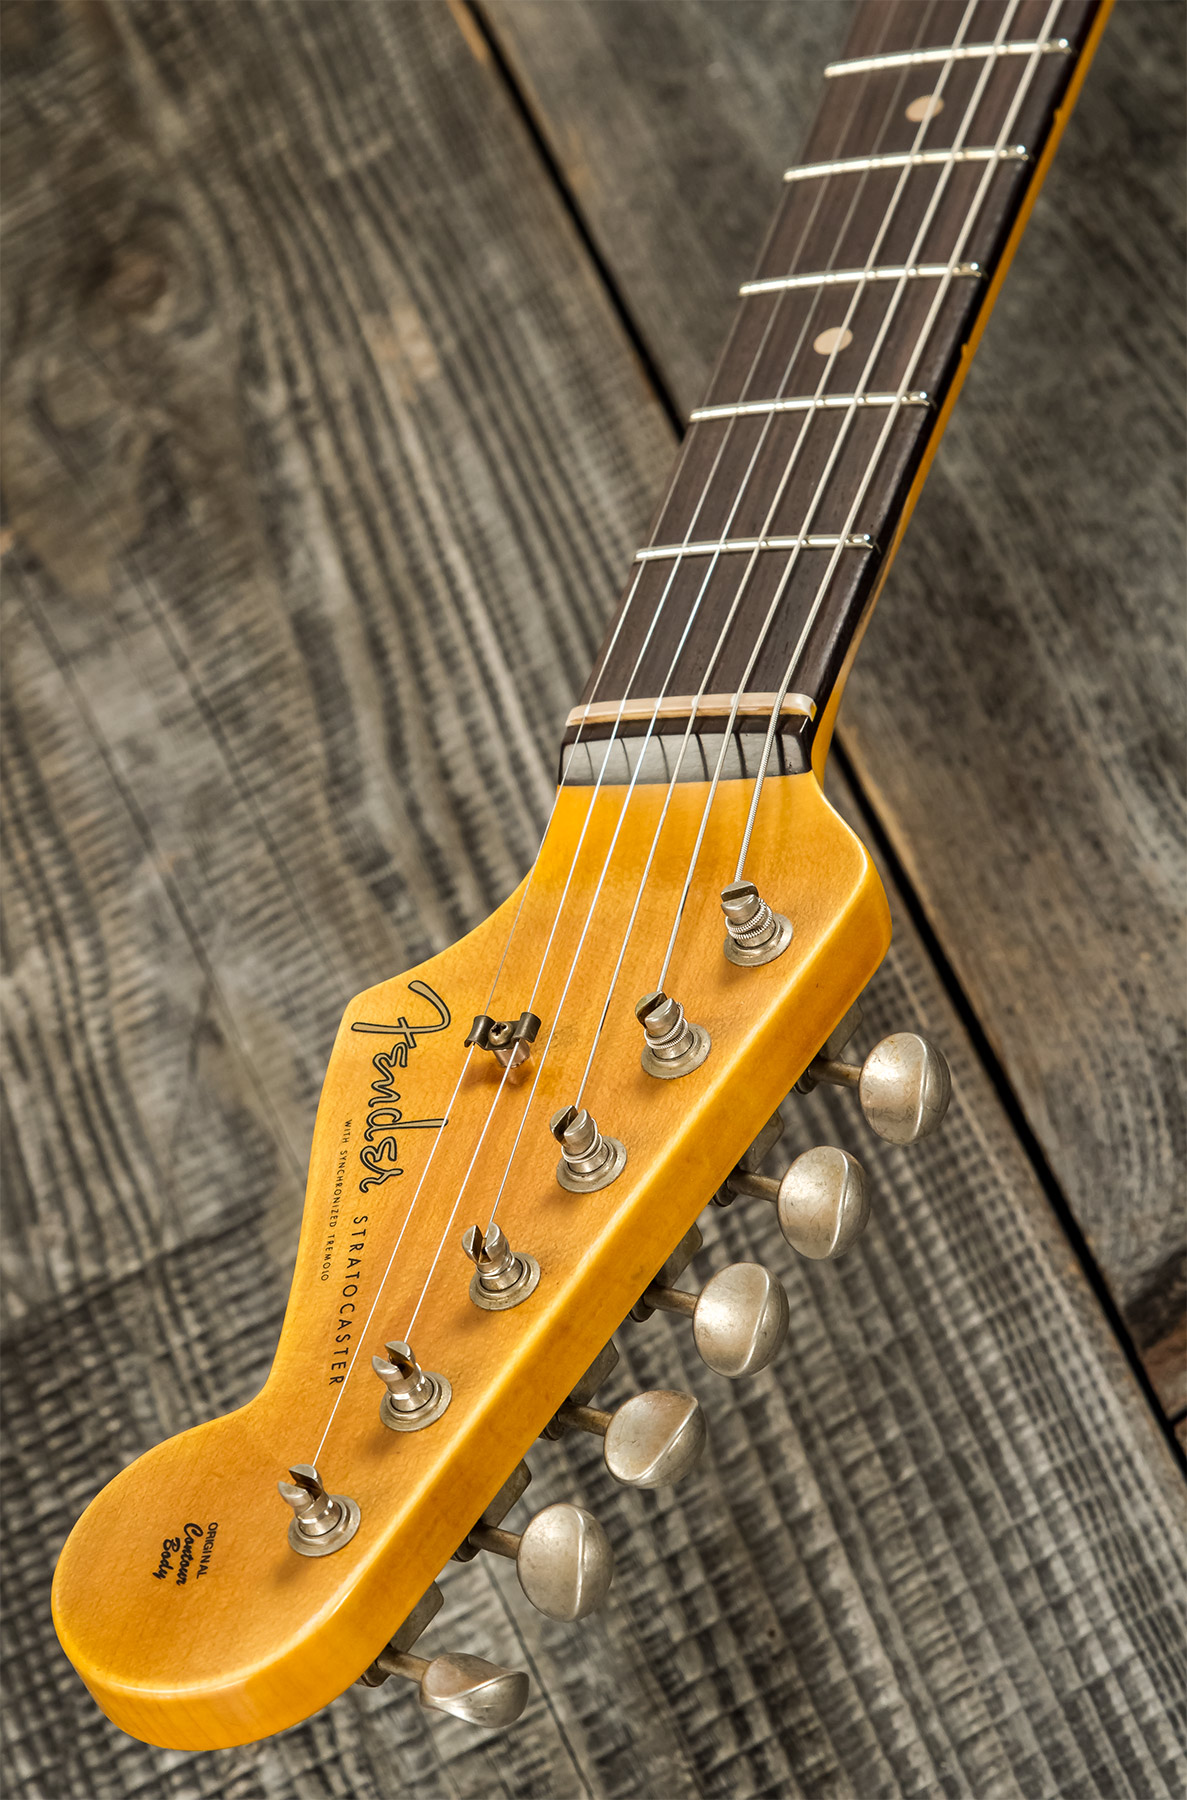 Fender Custom Shop Strat 1959 3s Trem Rw #r117661 - Relic 2-color Sunburst - E-Gitarre in Str-Form - Variation 9